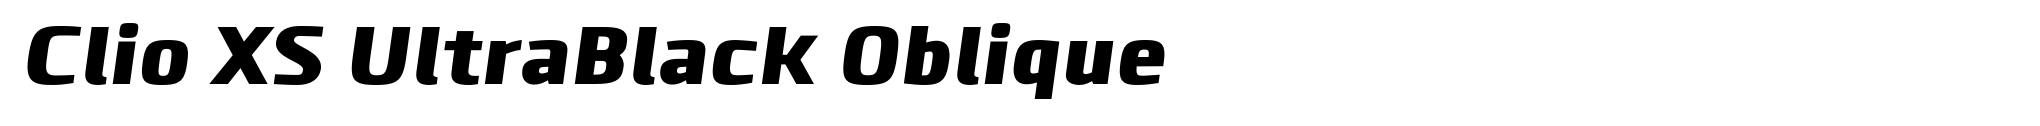 Clio XS UltraBlack Oblique image